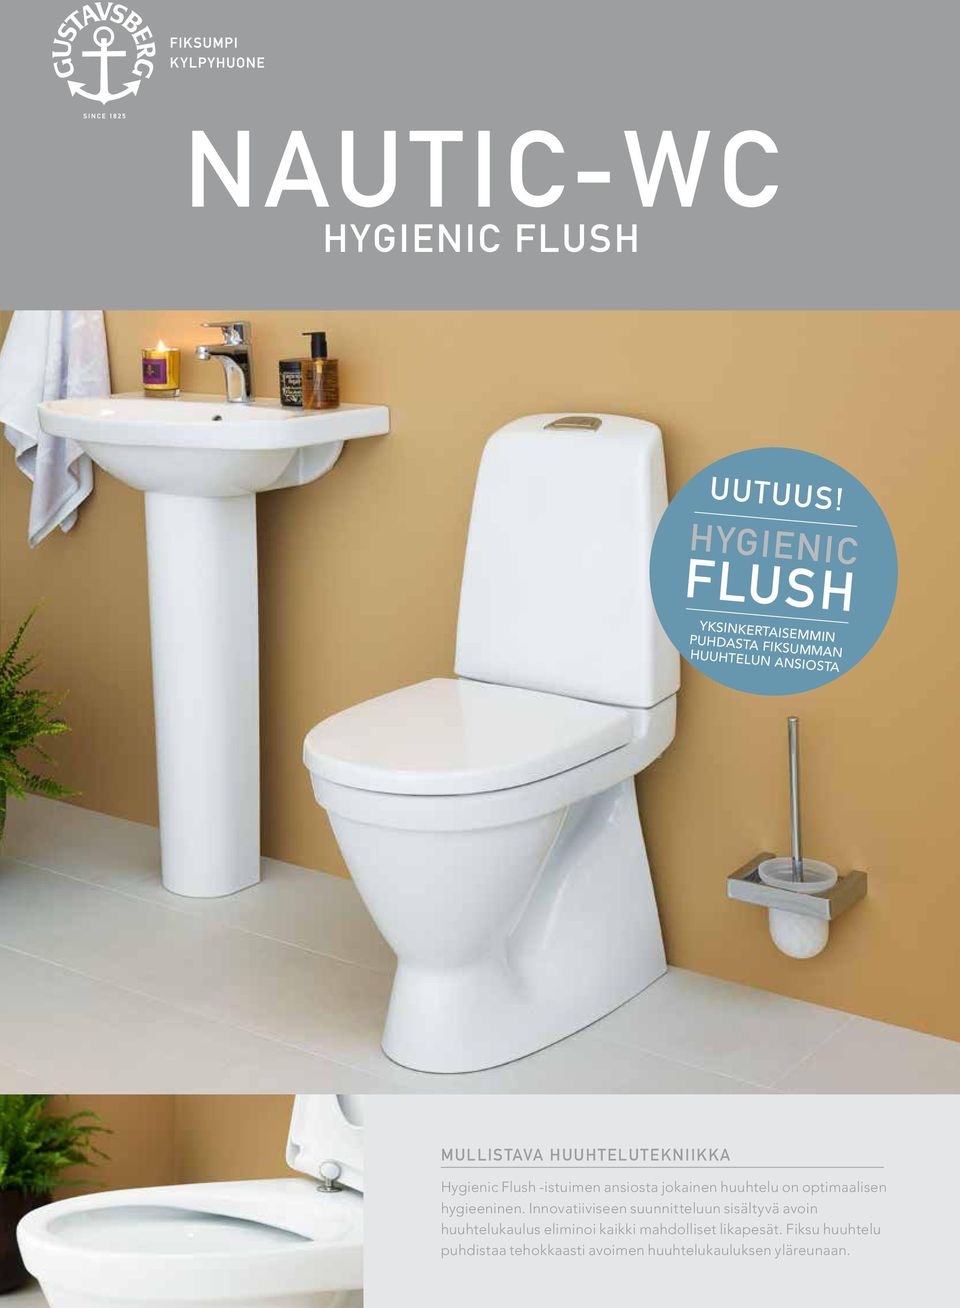 HUUHTELUTEKNIIKKA Hygienic Flush -istuimen ansiosta jokainen huuhtelu on optimaalisen